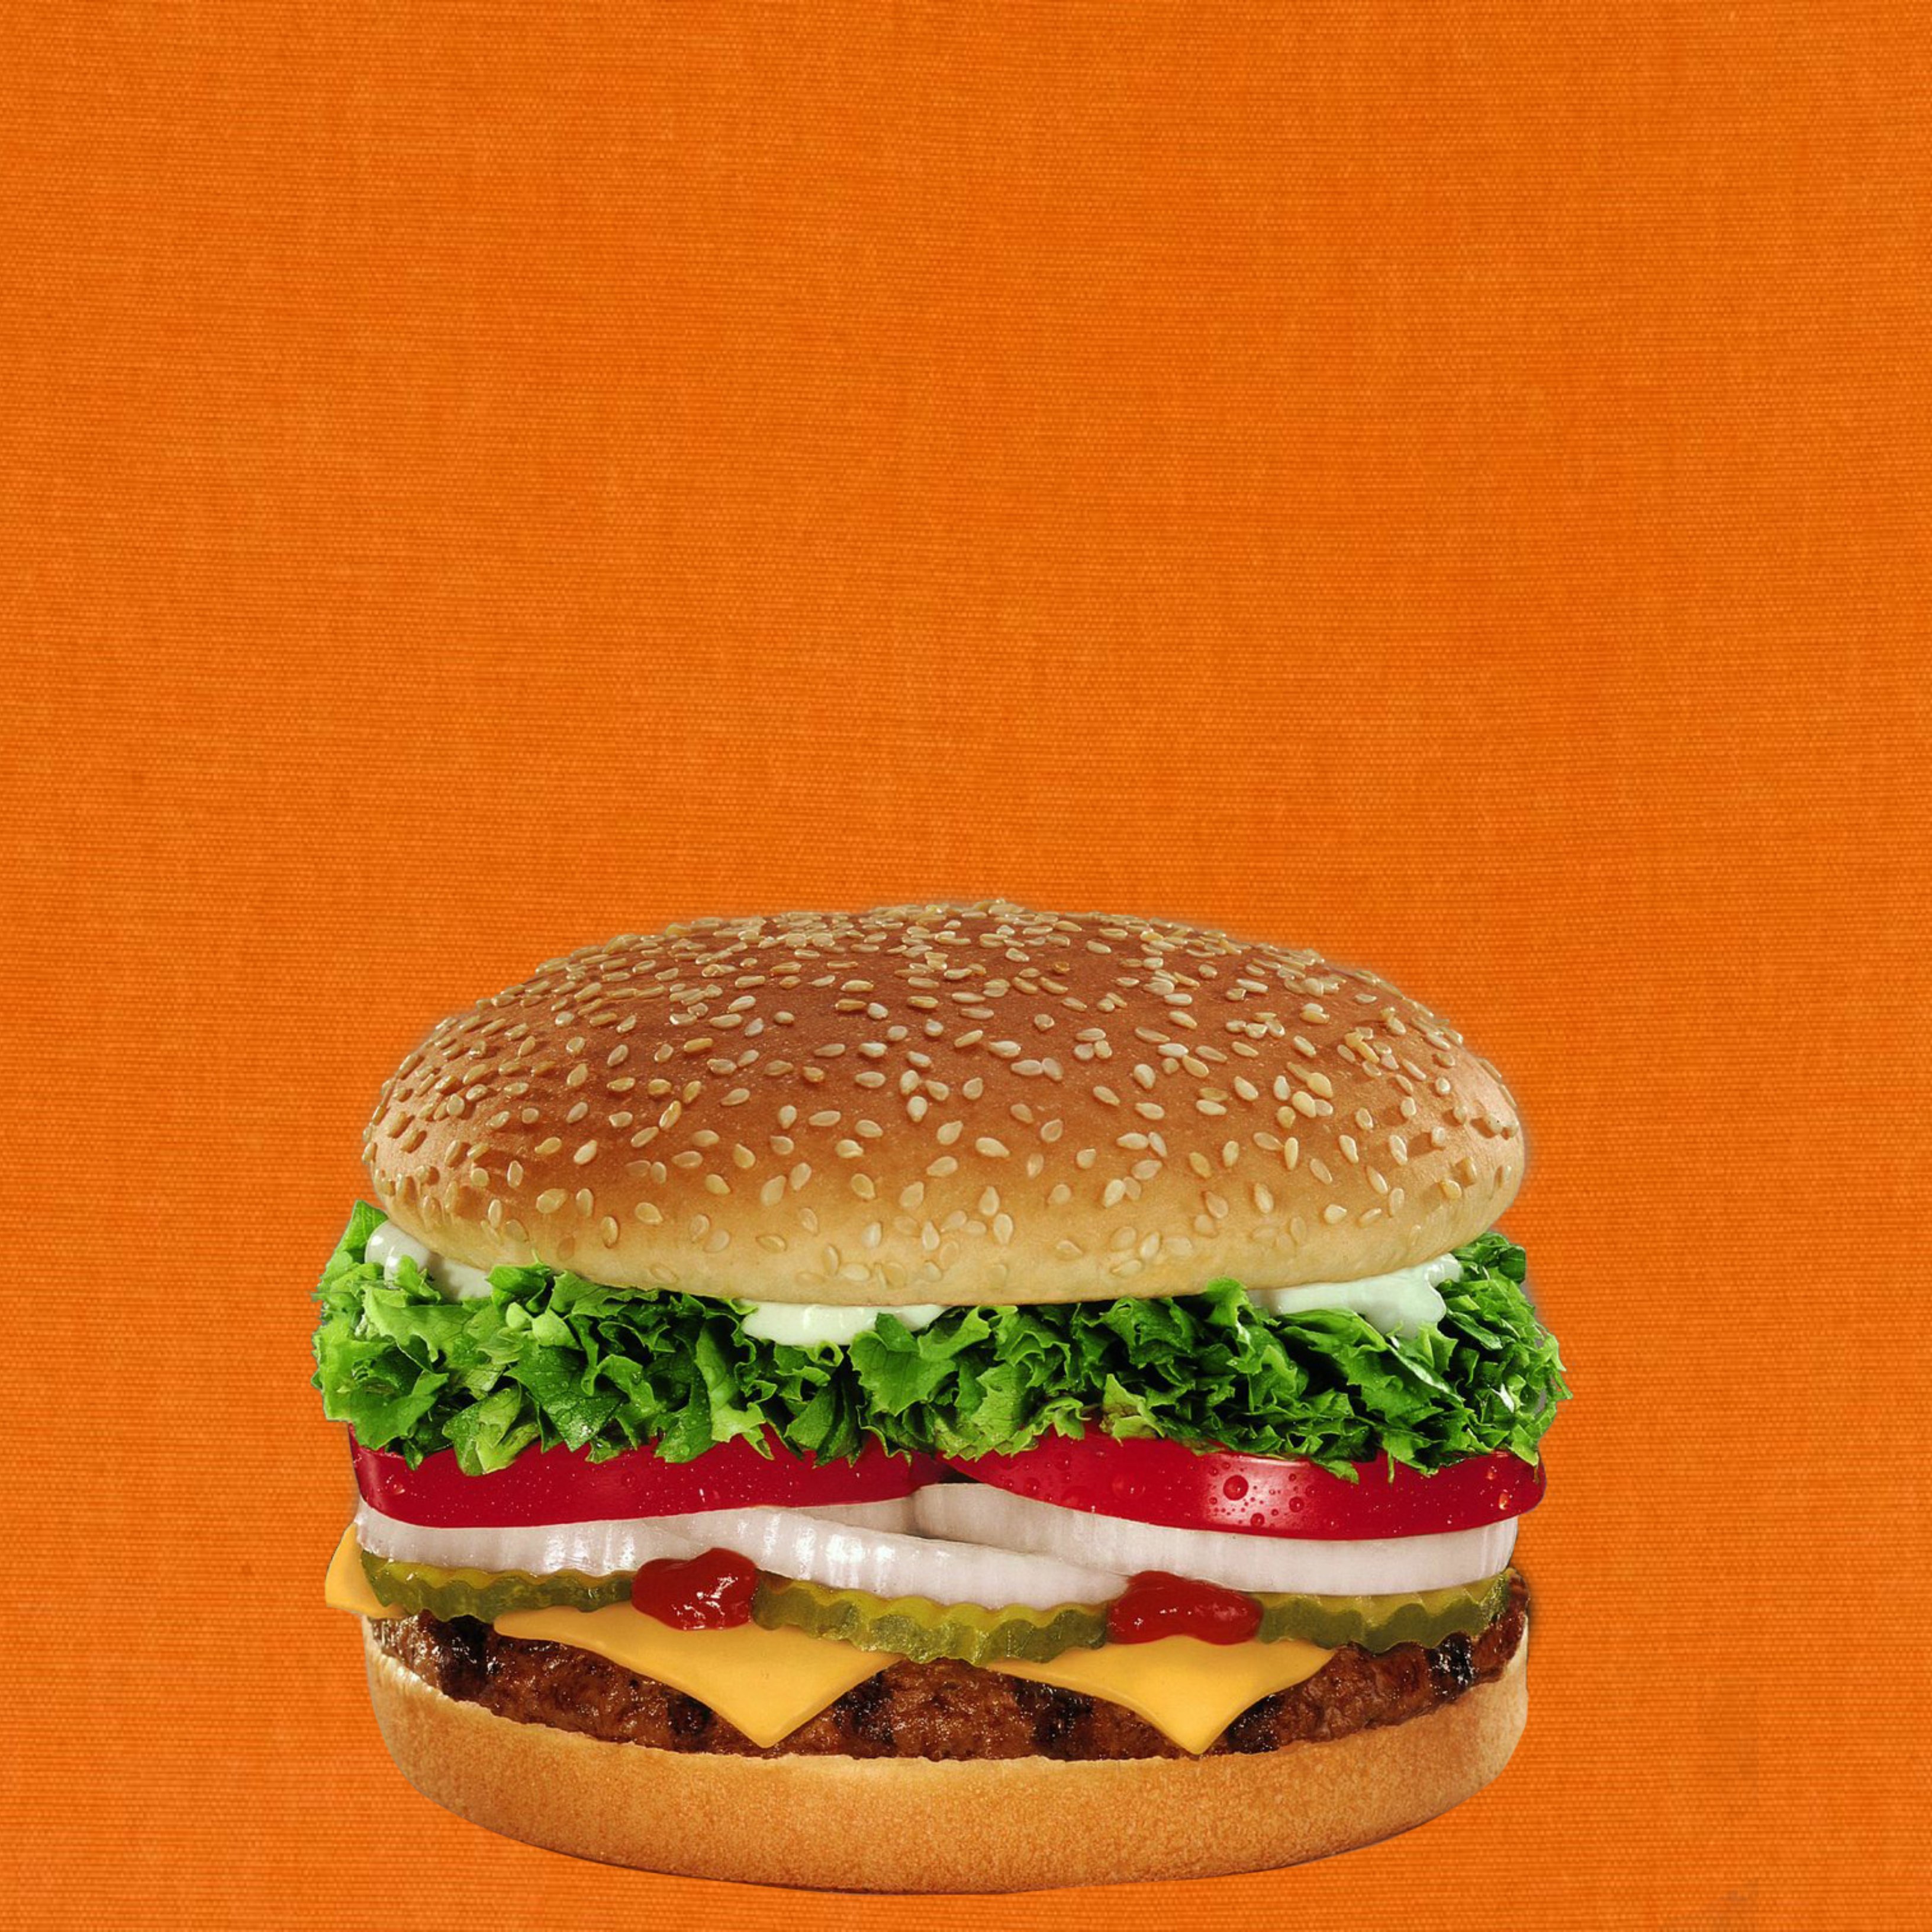 Burger King presenta su nueva Whopper vegetariana que sabe como la de carne